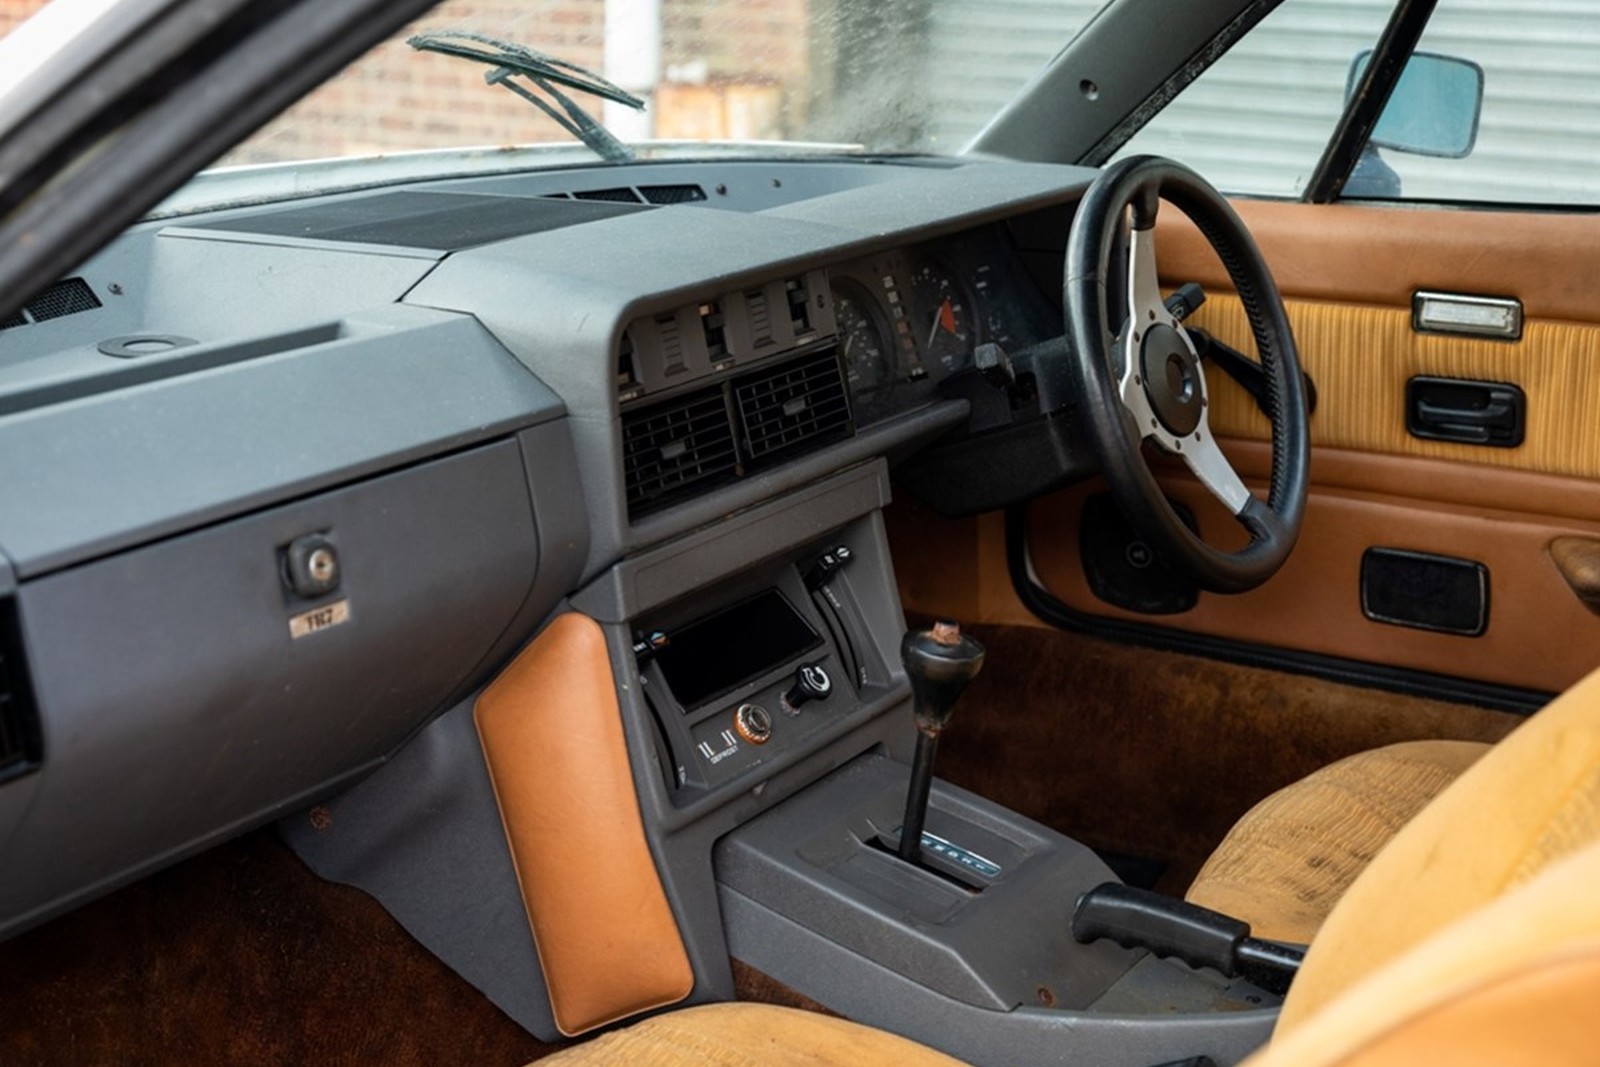 1980 Triumph TR8 Convertible - takmer nejazdený 41-ročný kabriolet prekvapí technickým stavom!